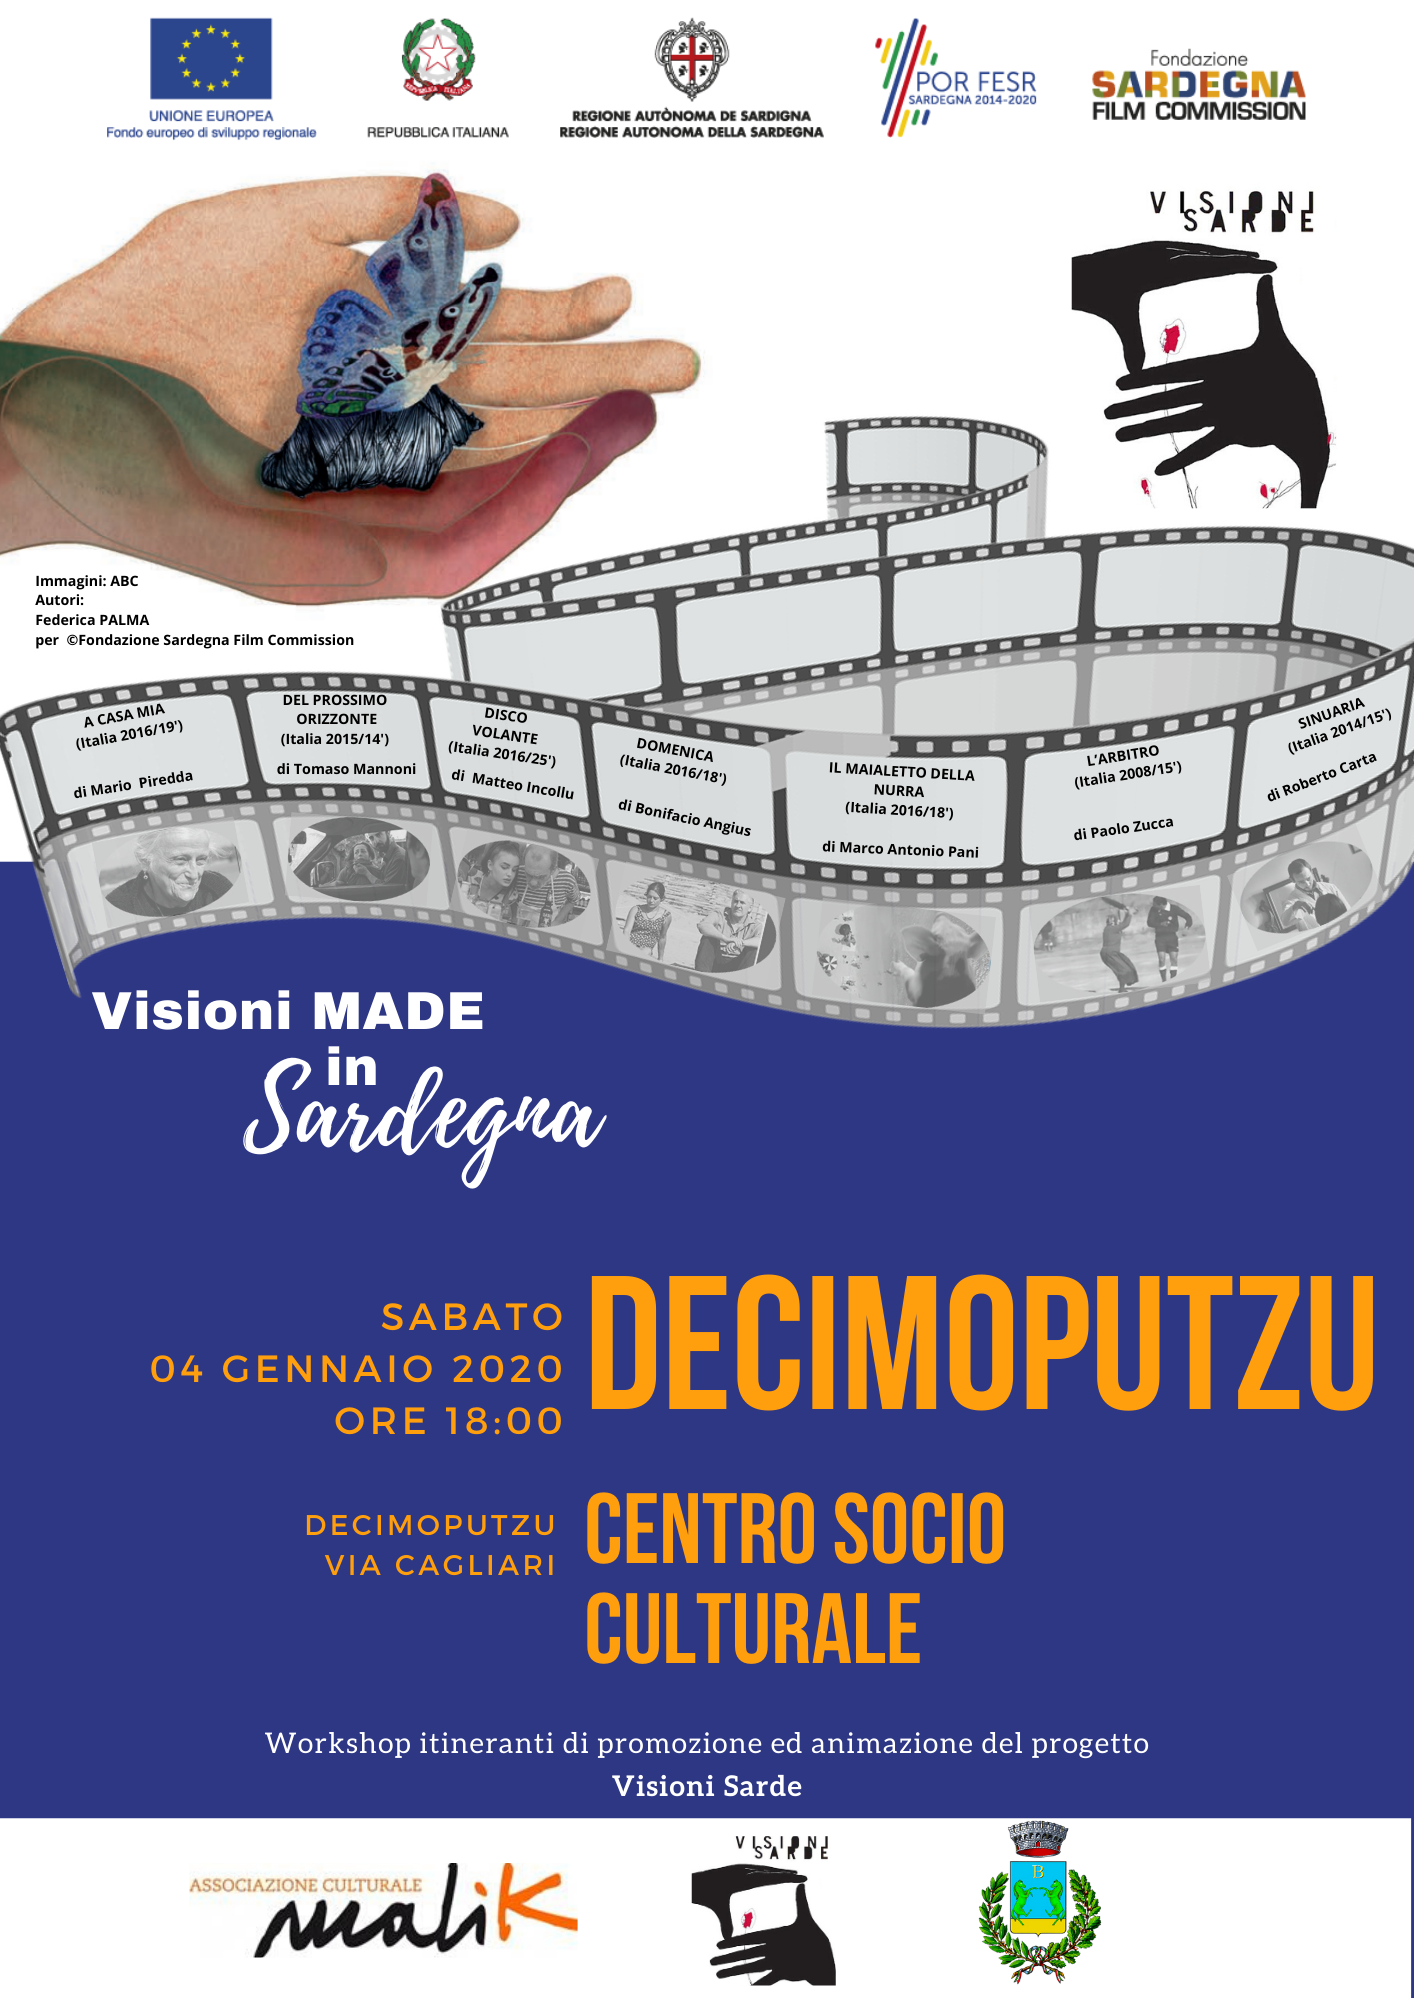 Il cinema made in Sardegna protagonista a Decimoputzu, prima tappa del 2020 per il progetto “Visioni made in Sardegna”